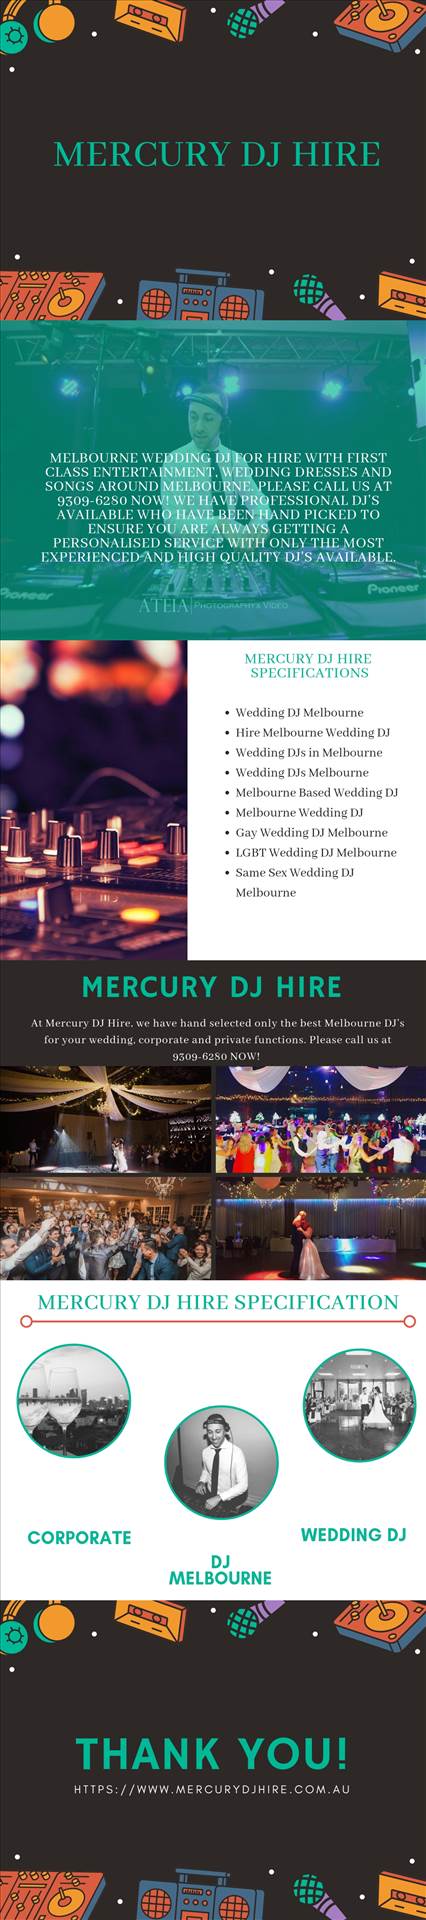 Wedding DJs.jpg  by Mercurydjhire